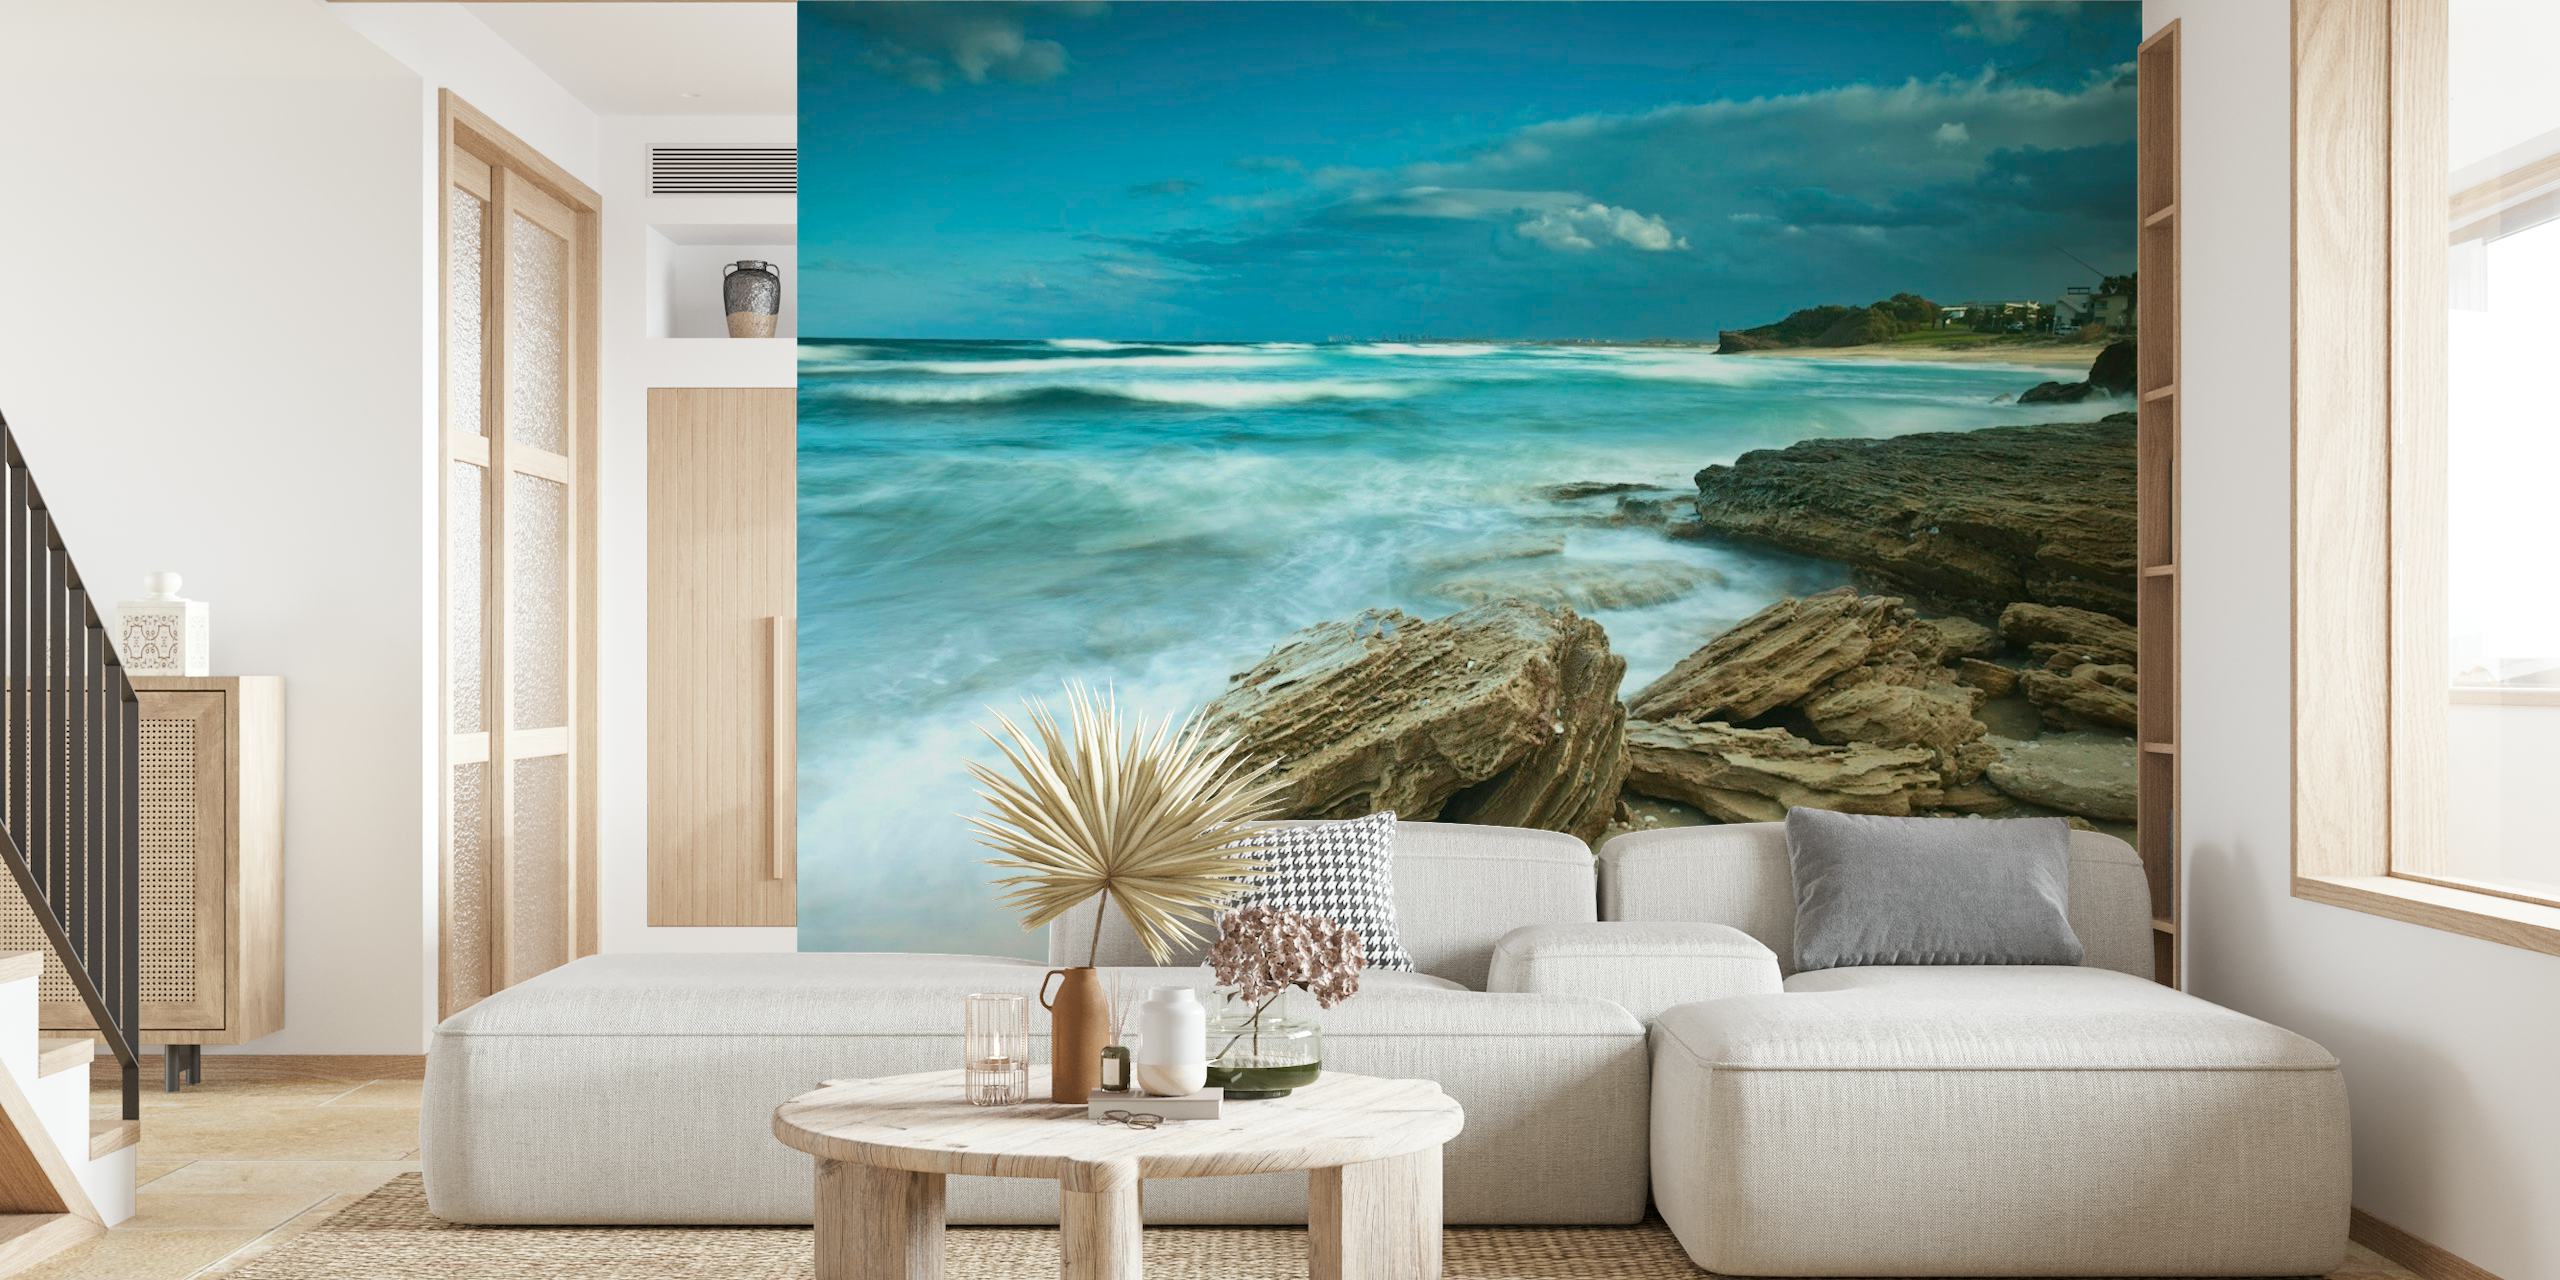 Papier peint mural de la côte rocheuse avec des vagues s'écrasant contre le rivage